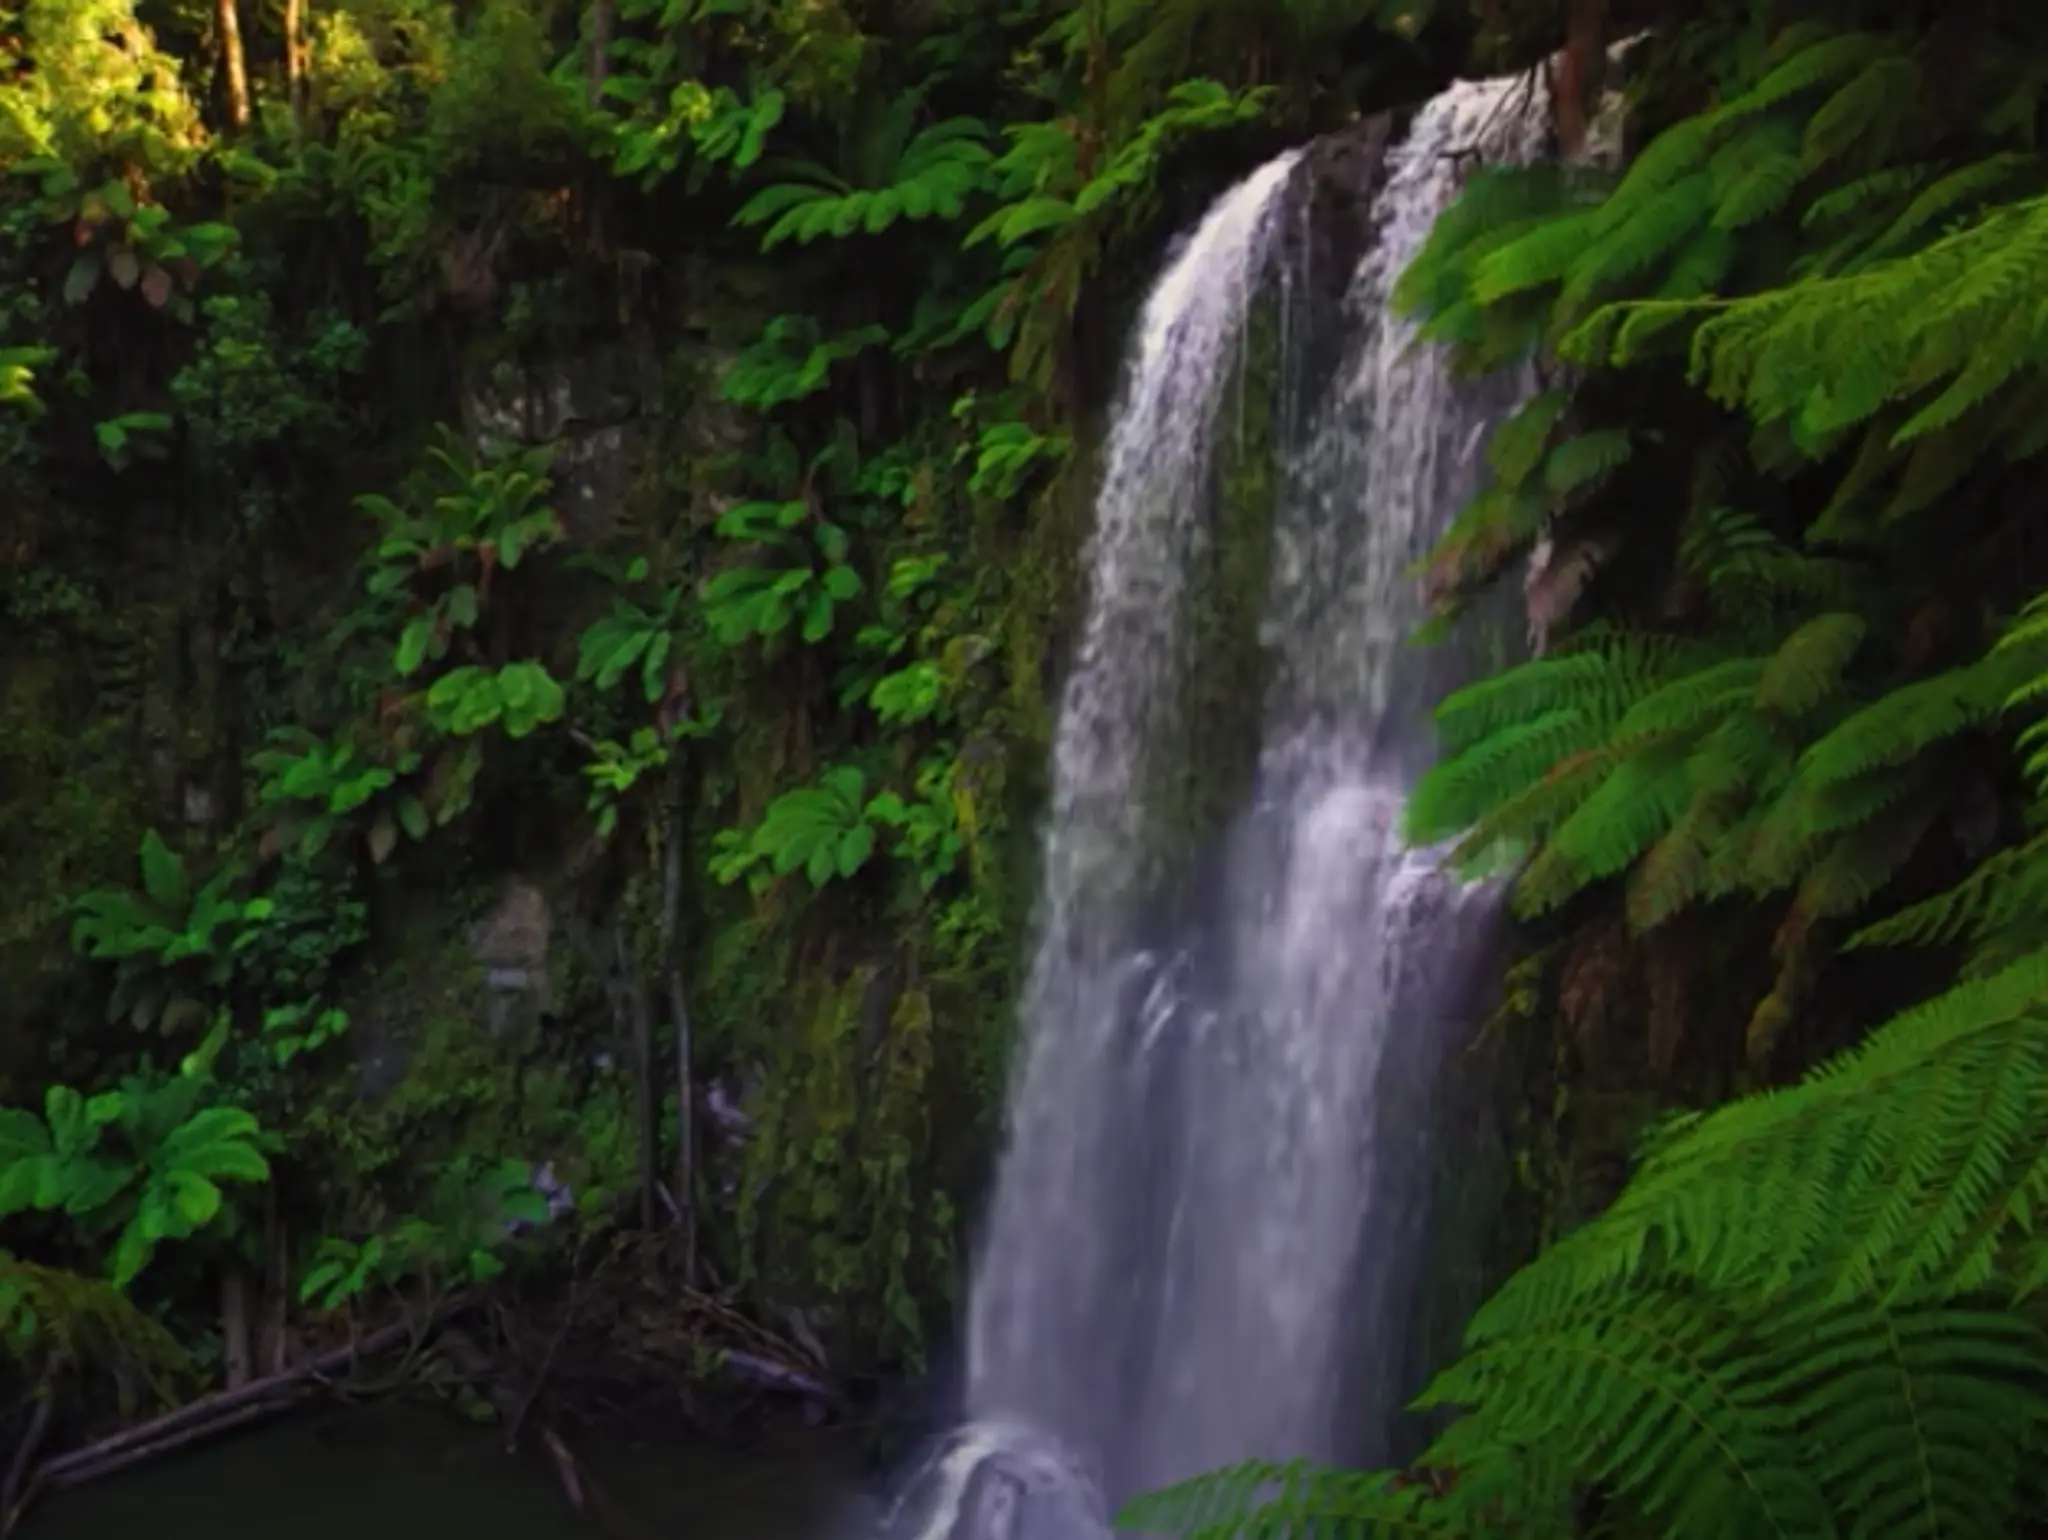 VIDEO: Australian Rainforest Relaxation in 8K 